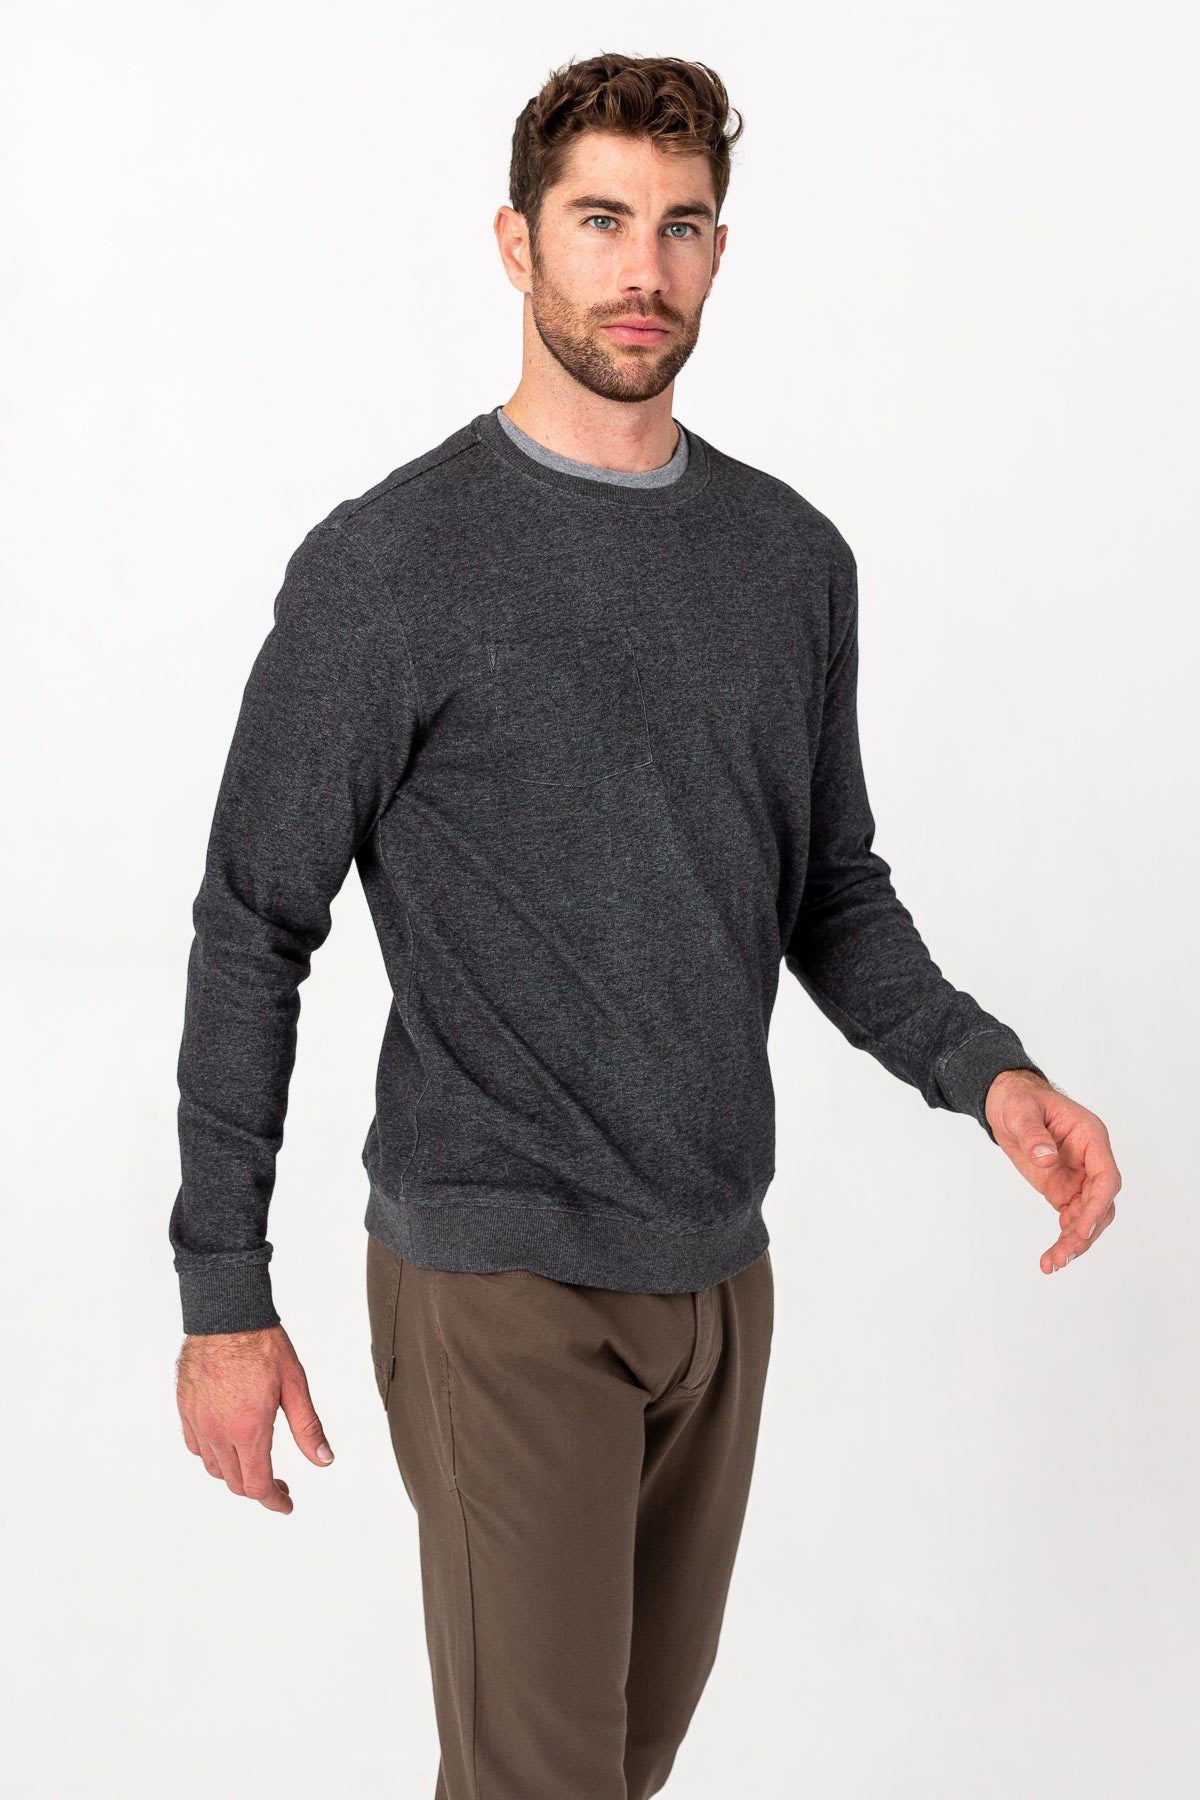 Linksoul Mens Double knit Pocket Sweatshirt, Black Heather